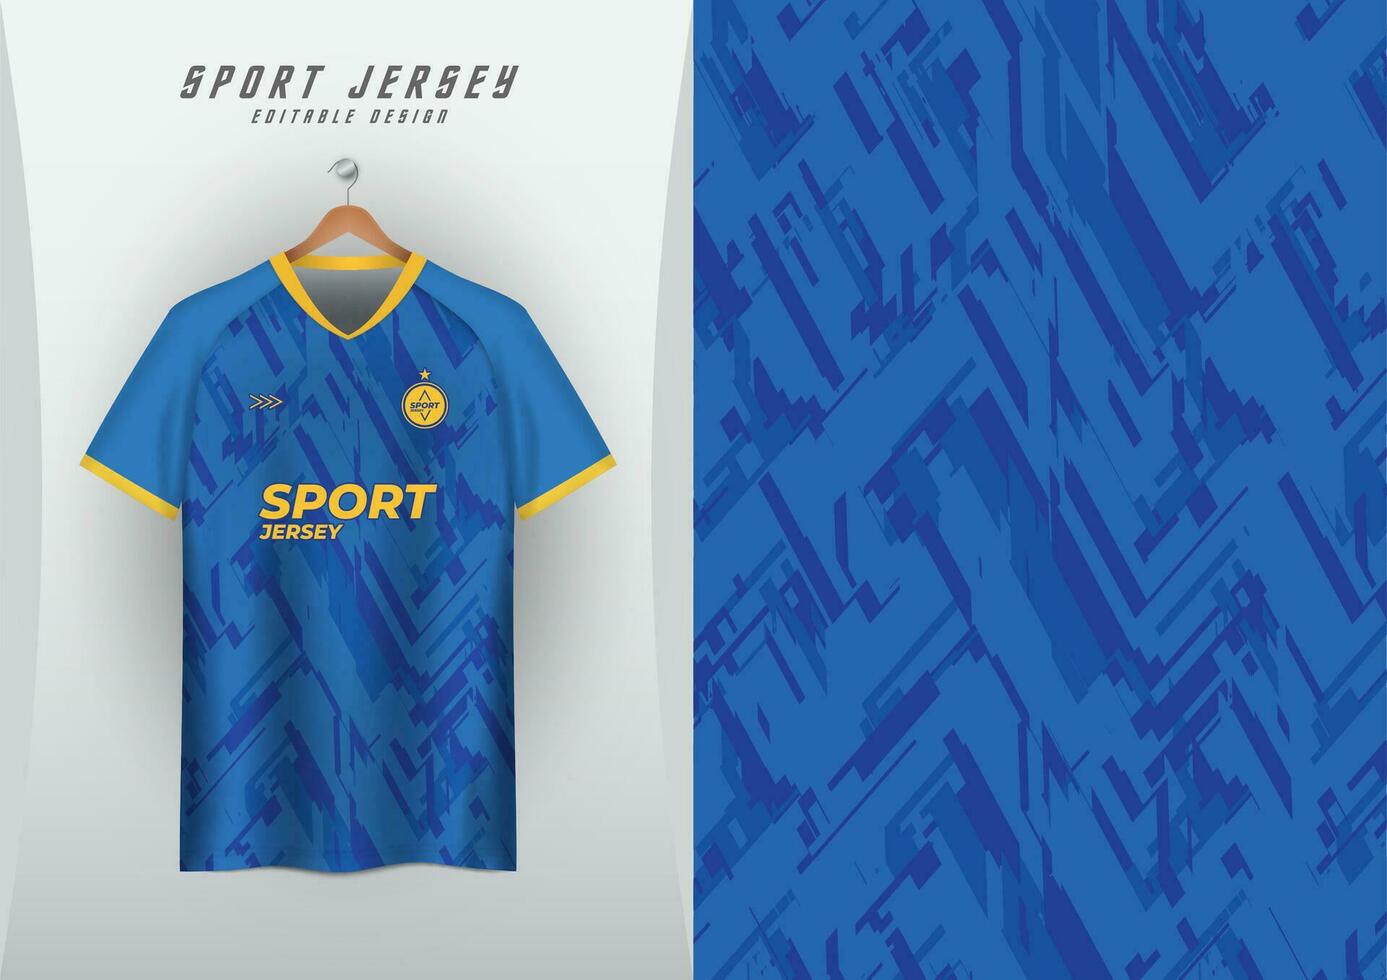 achtergronden voor sport- Jersey, voetbal truien, rennen truien, racing truien, blauw overlappende strepen, geel arm strepen vector